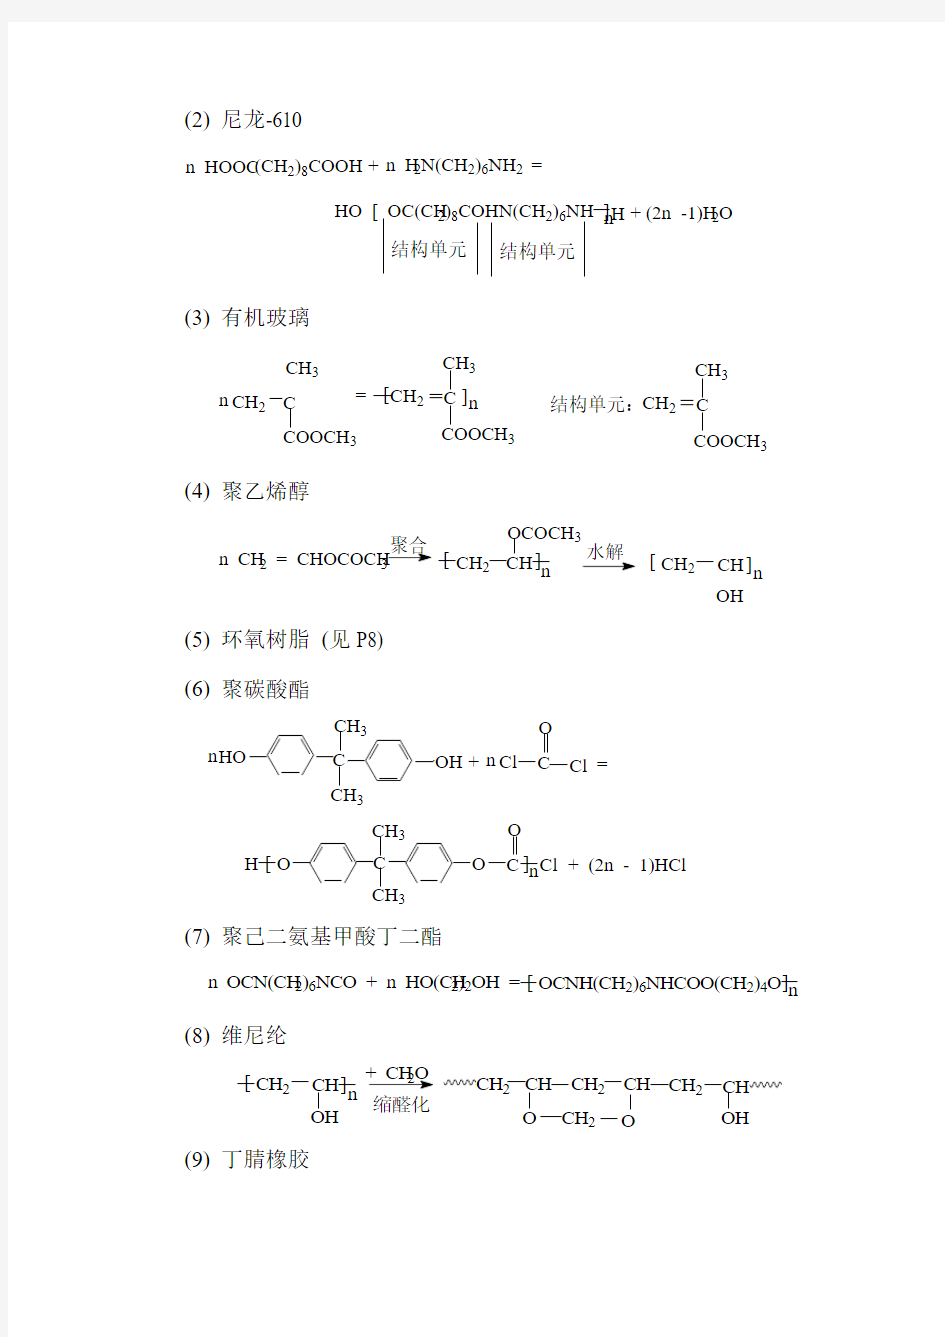 《高分子化学教程》习题答案(第三版)王槐三_科学出版社(DOC)